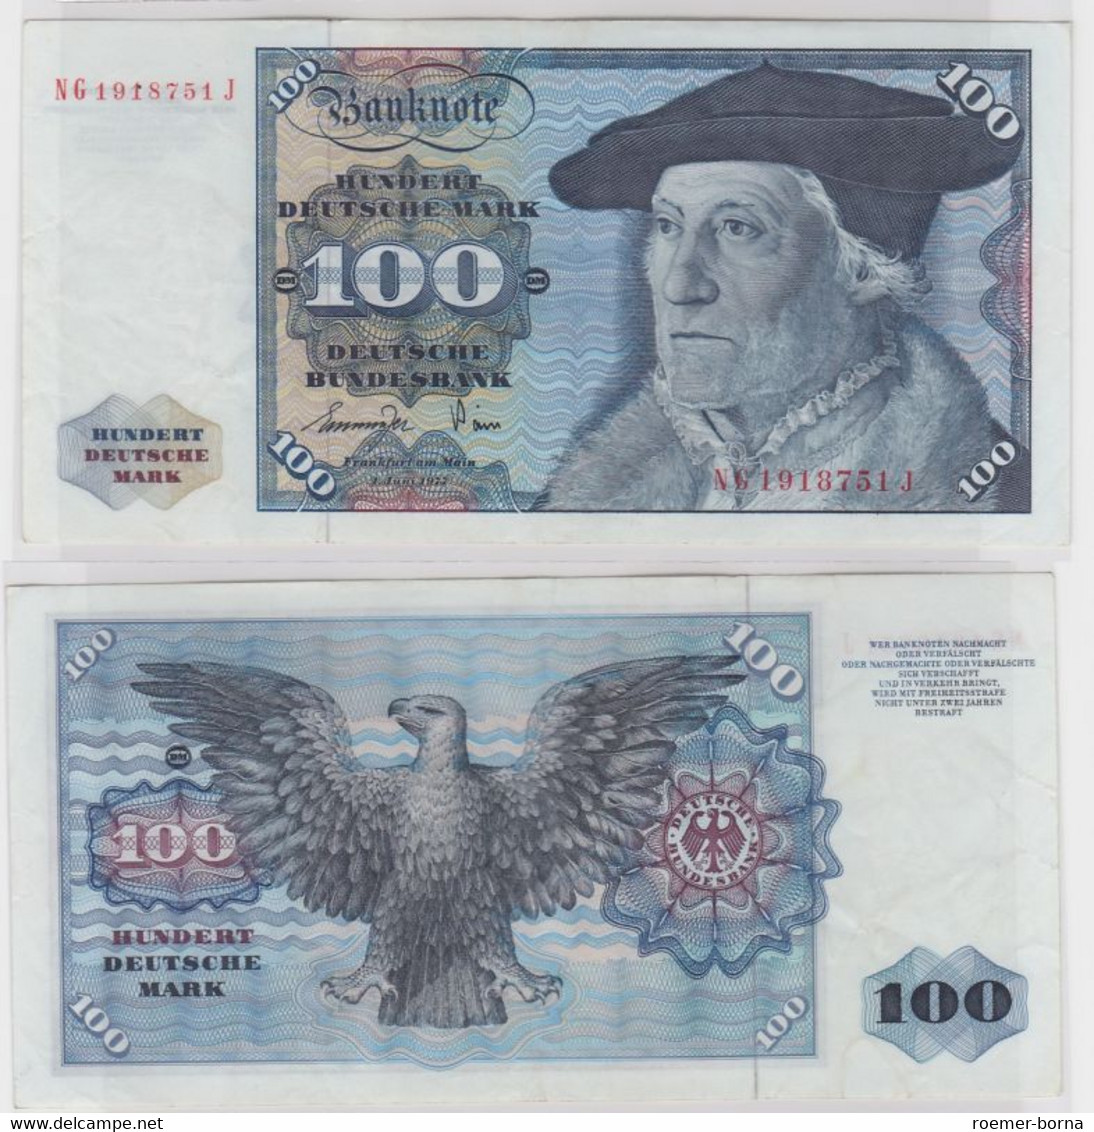 T146535 Banknote 100 DM Deutsche Mark Ro 278a Schein 1.Juni 1977 KN NG 1918751 J - 100 Deutsche Mark